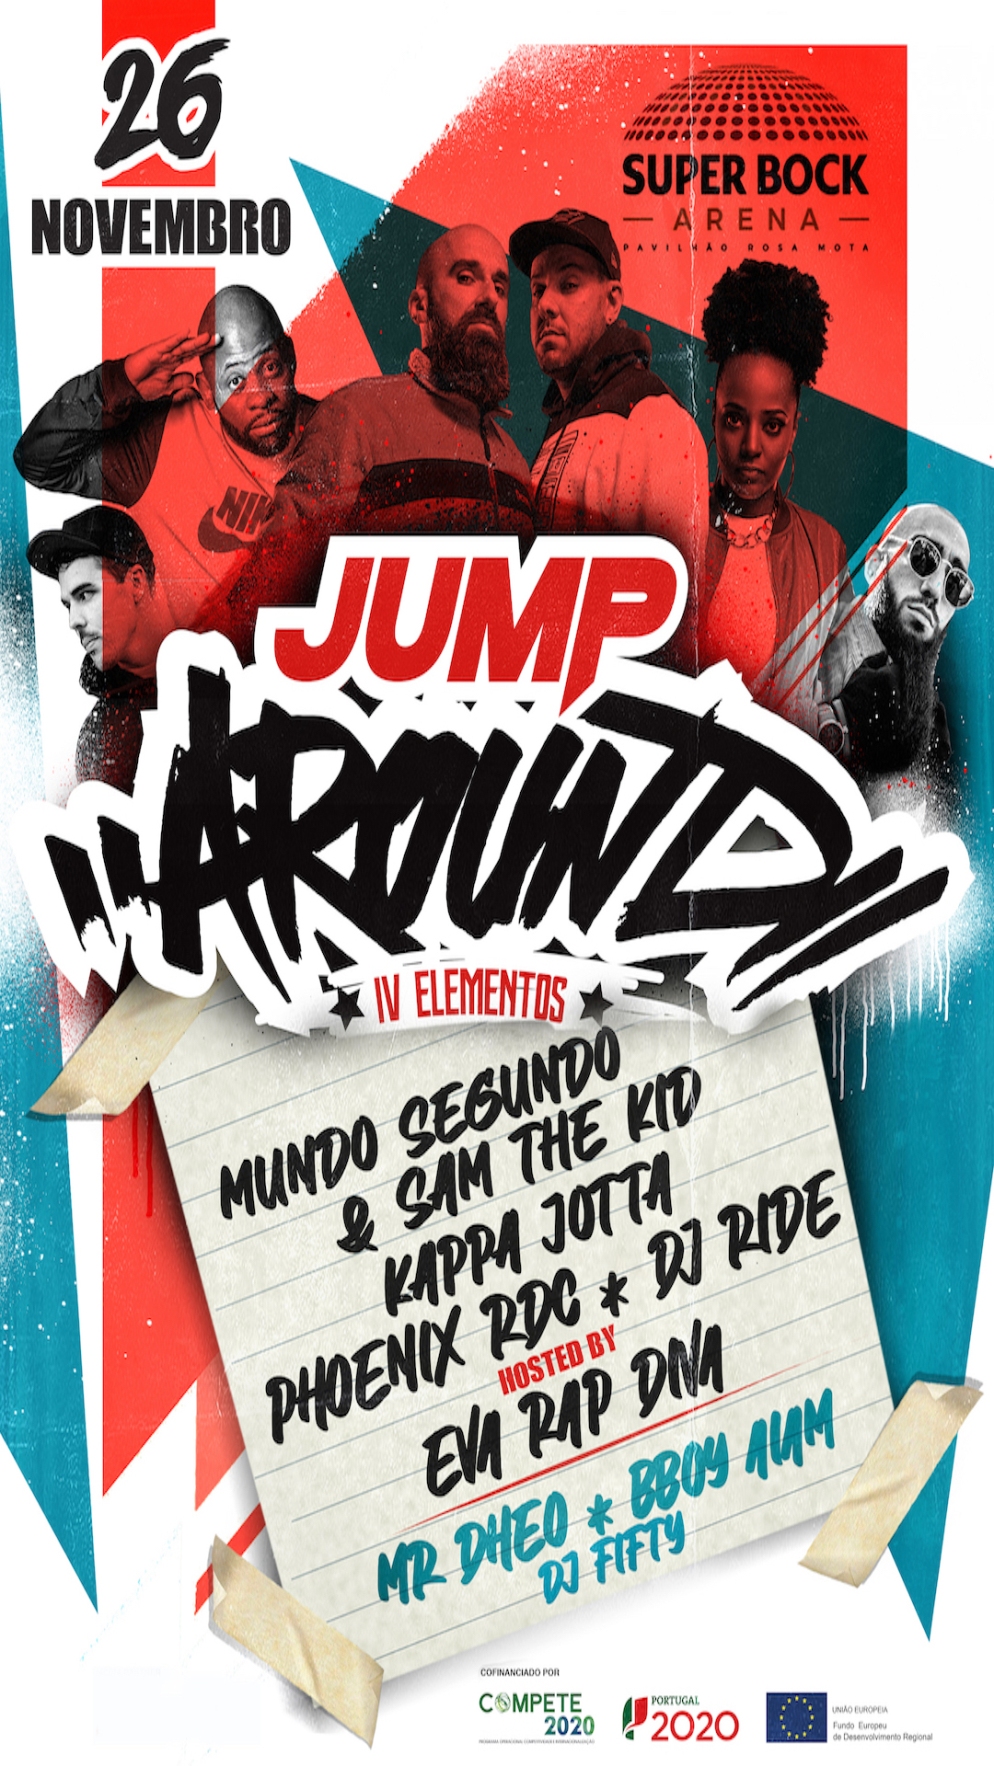 Jump Around - Evento